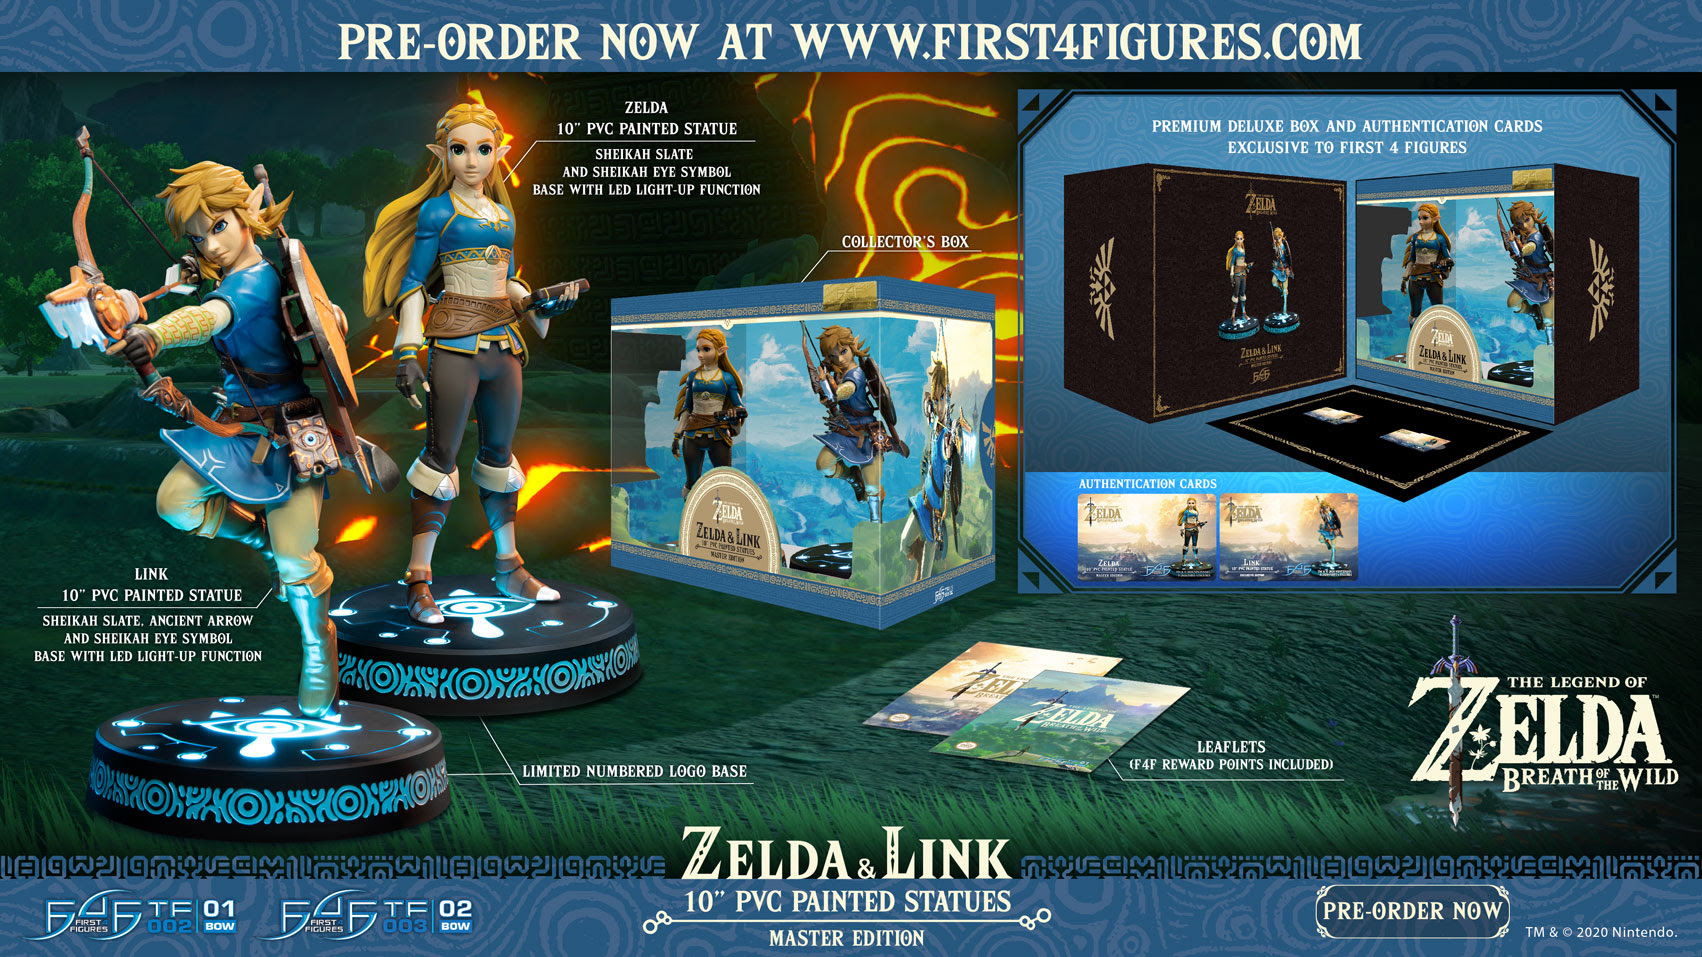 The Legend of Zelda: Breath of the Wild - Zelda Exclusive Edition